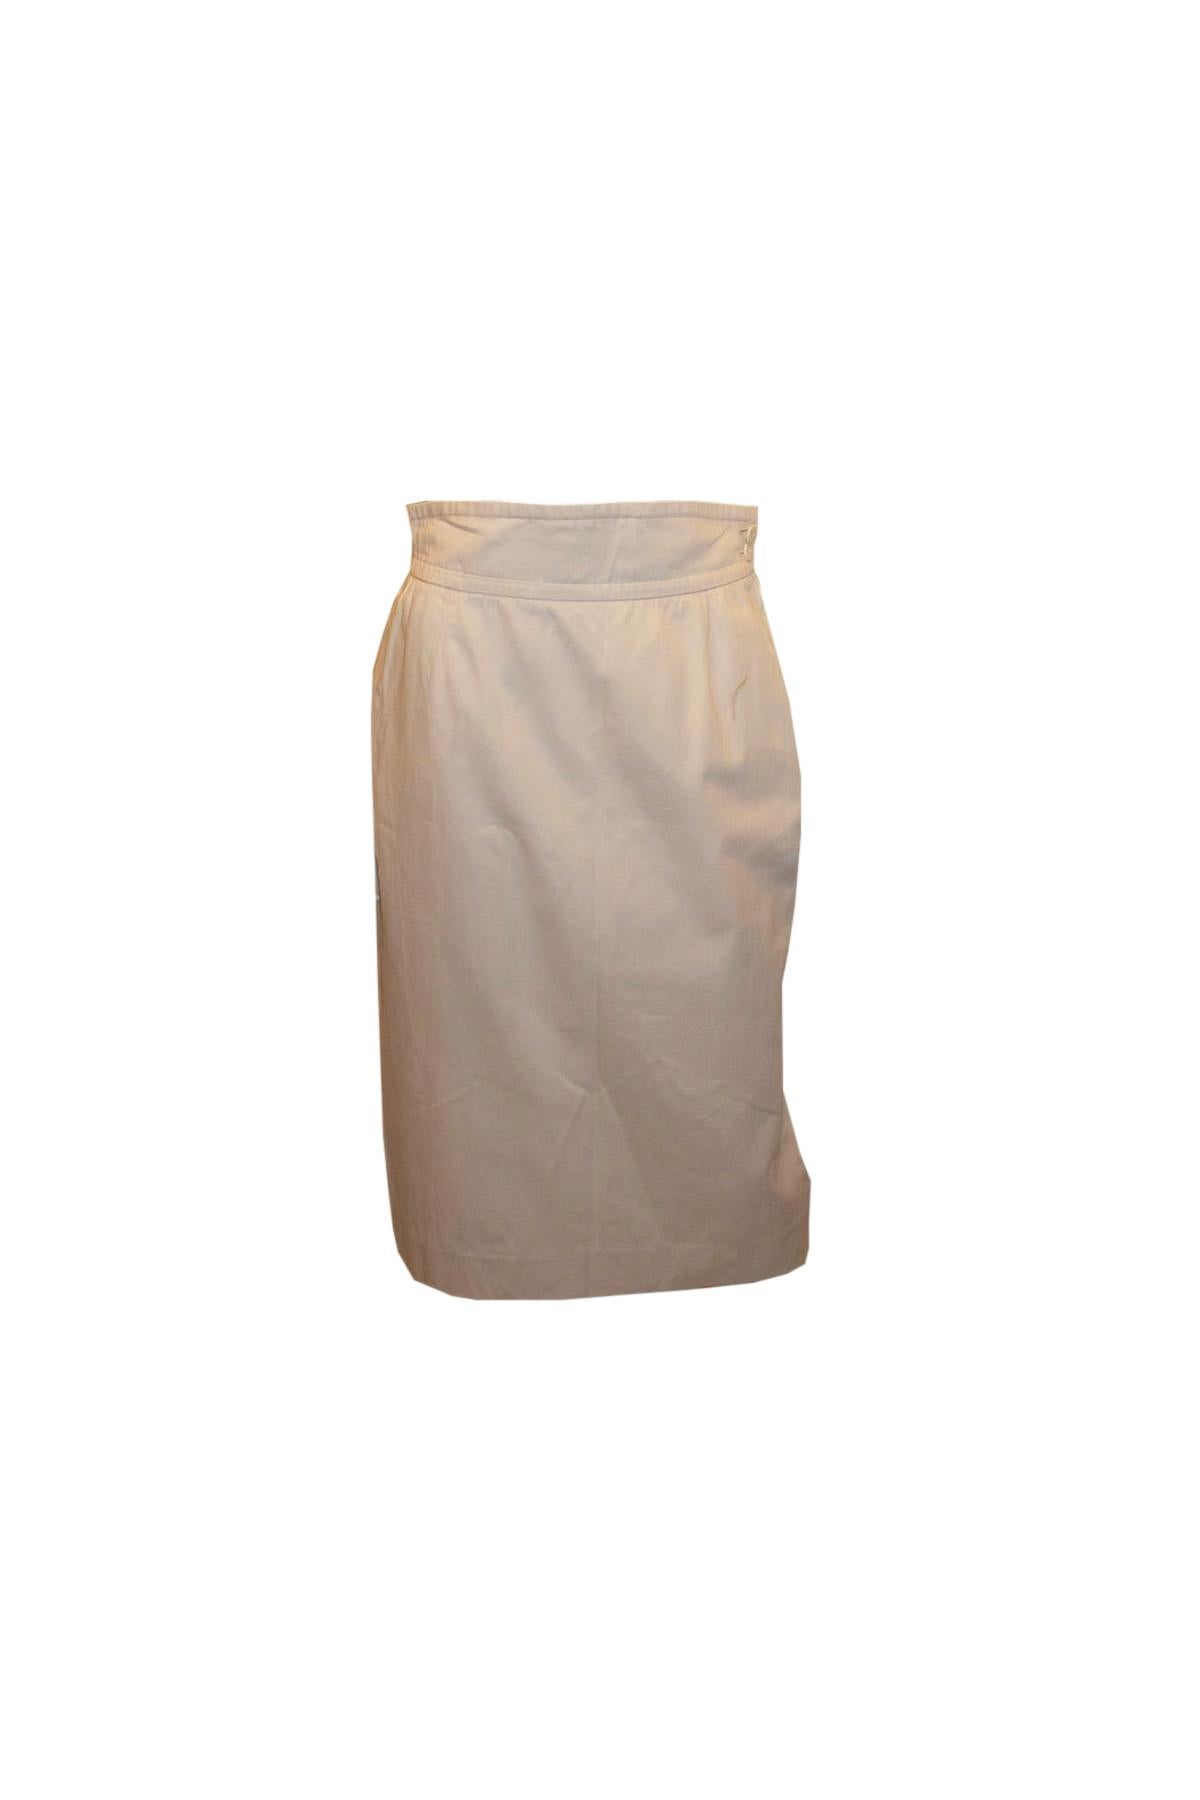 Vintage Yves Saint Laurent White Cotton Skirt For Sale 1